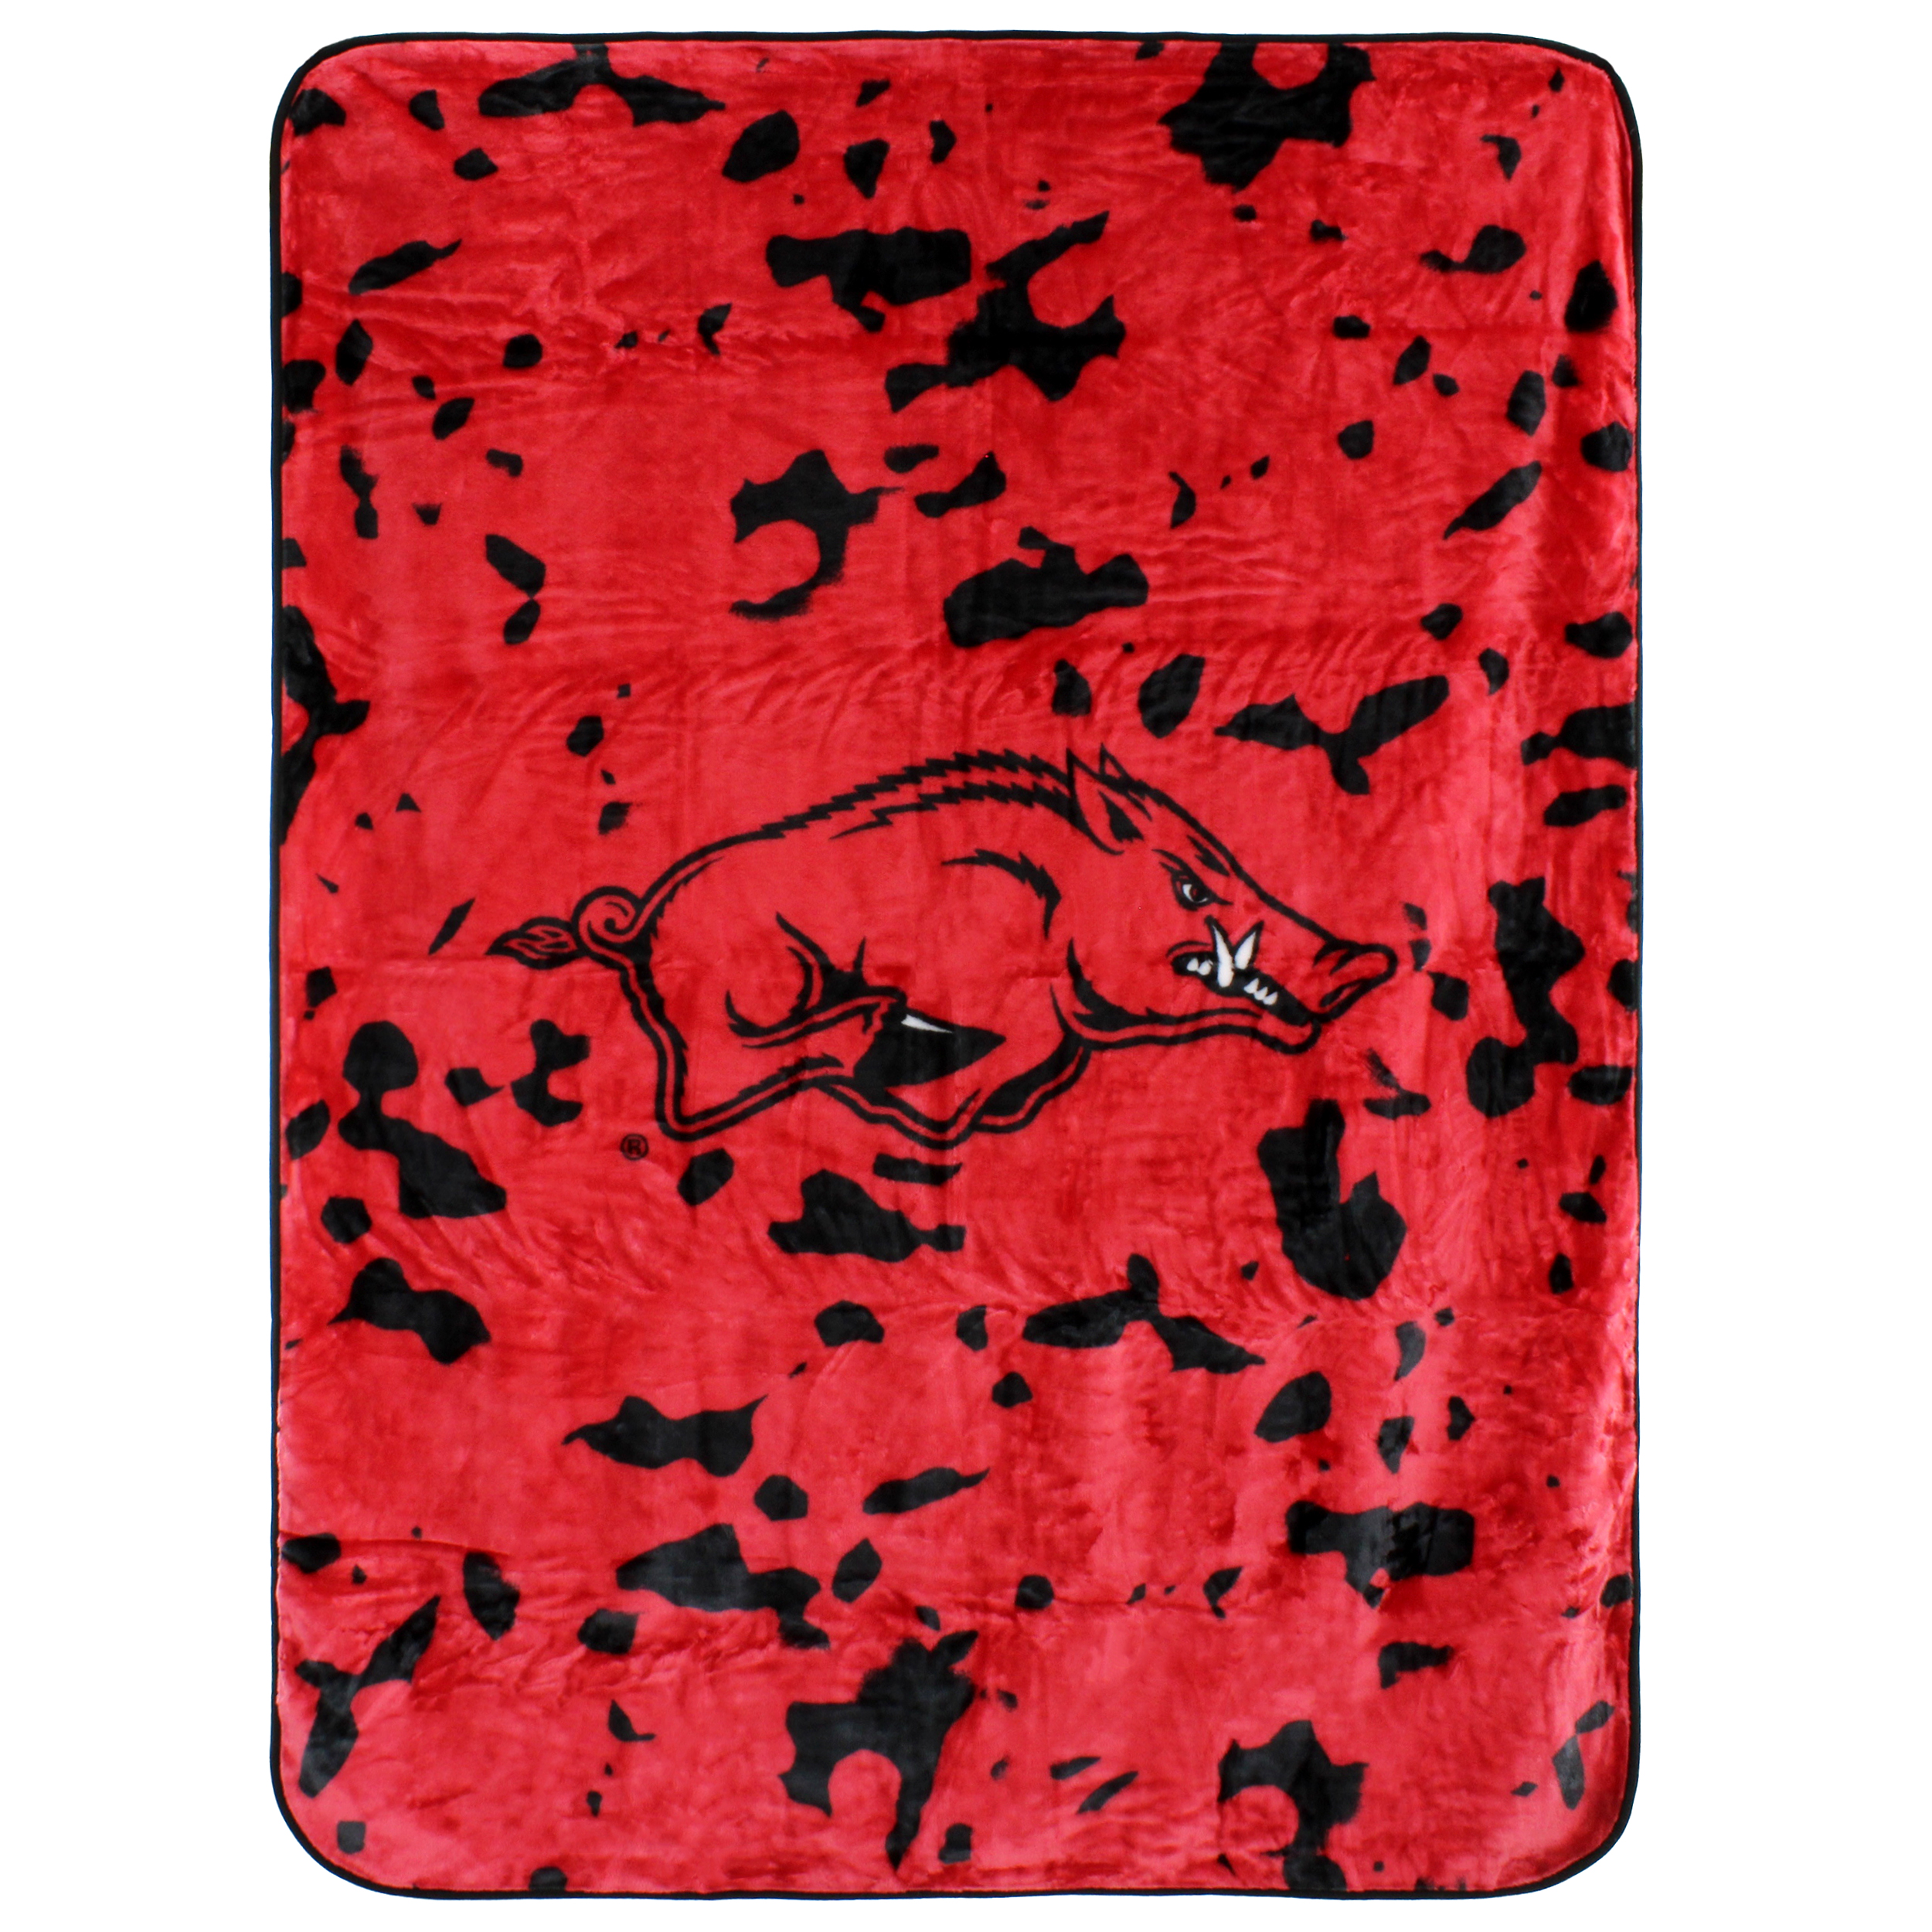 College Covers Arkansas Razorbacks Huge Raschel Throw Blanket, Bedspread, 86" x 63" - image 1 of 8